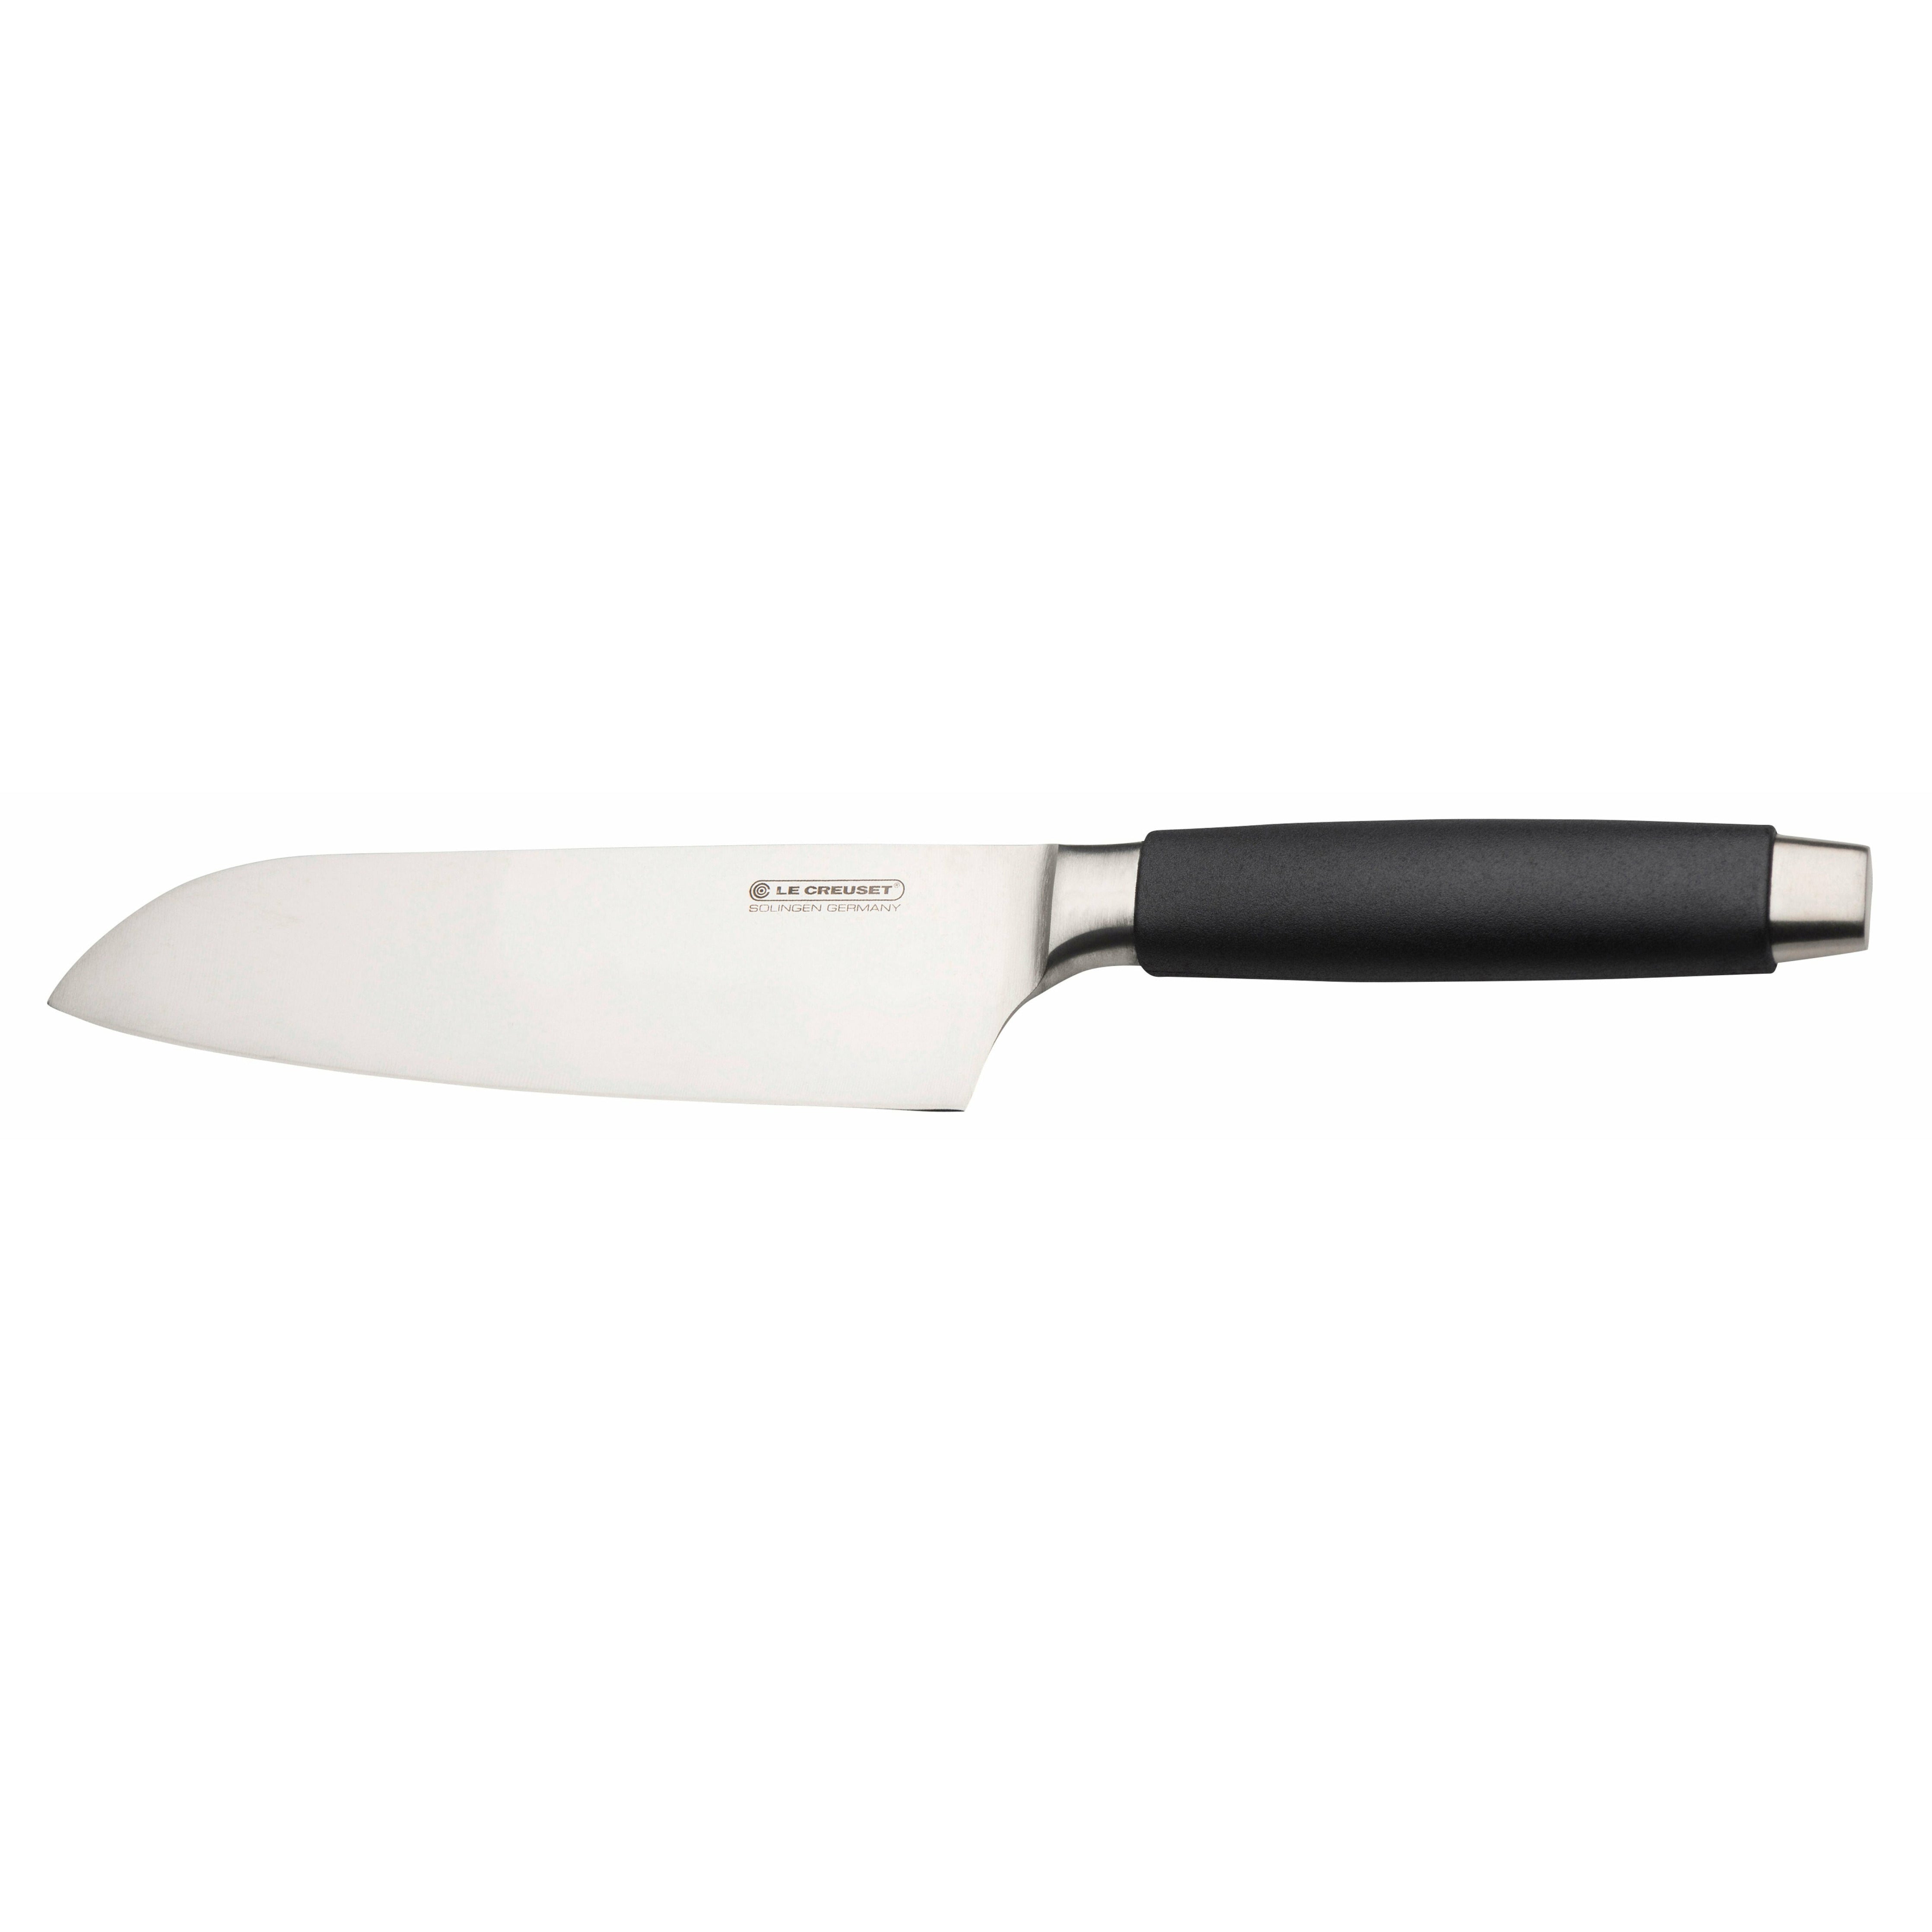 Le Creuset Santoku Knife Standard med sort håndtag, 18 cm